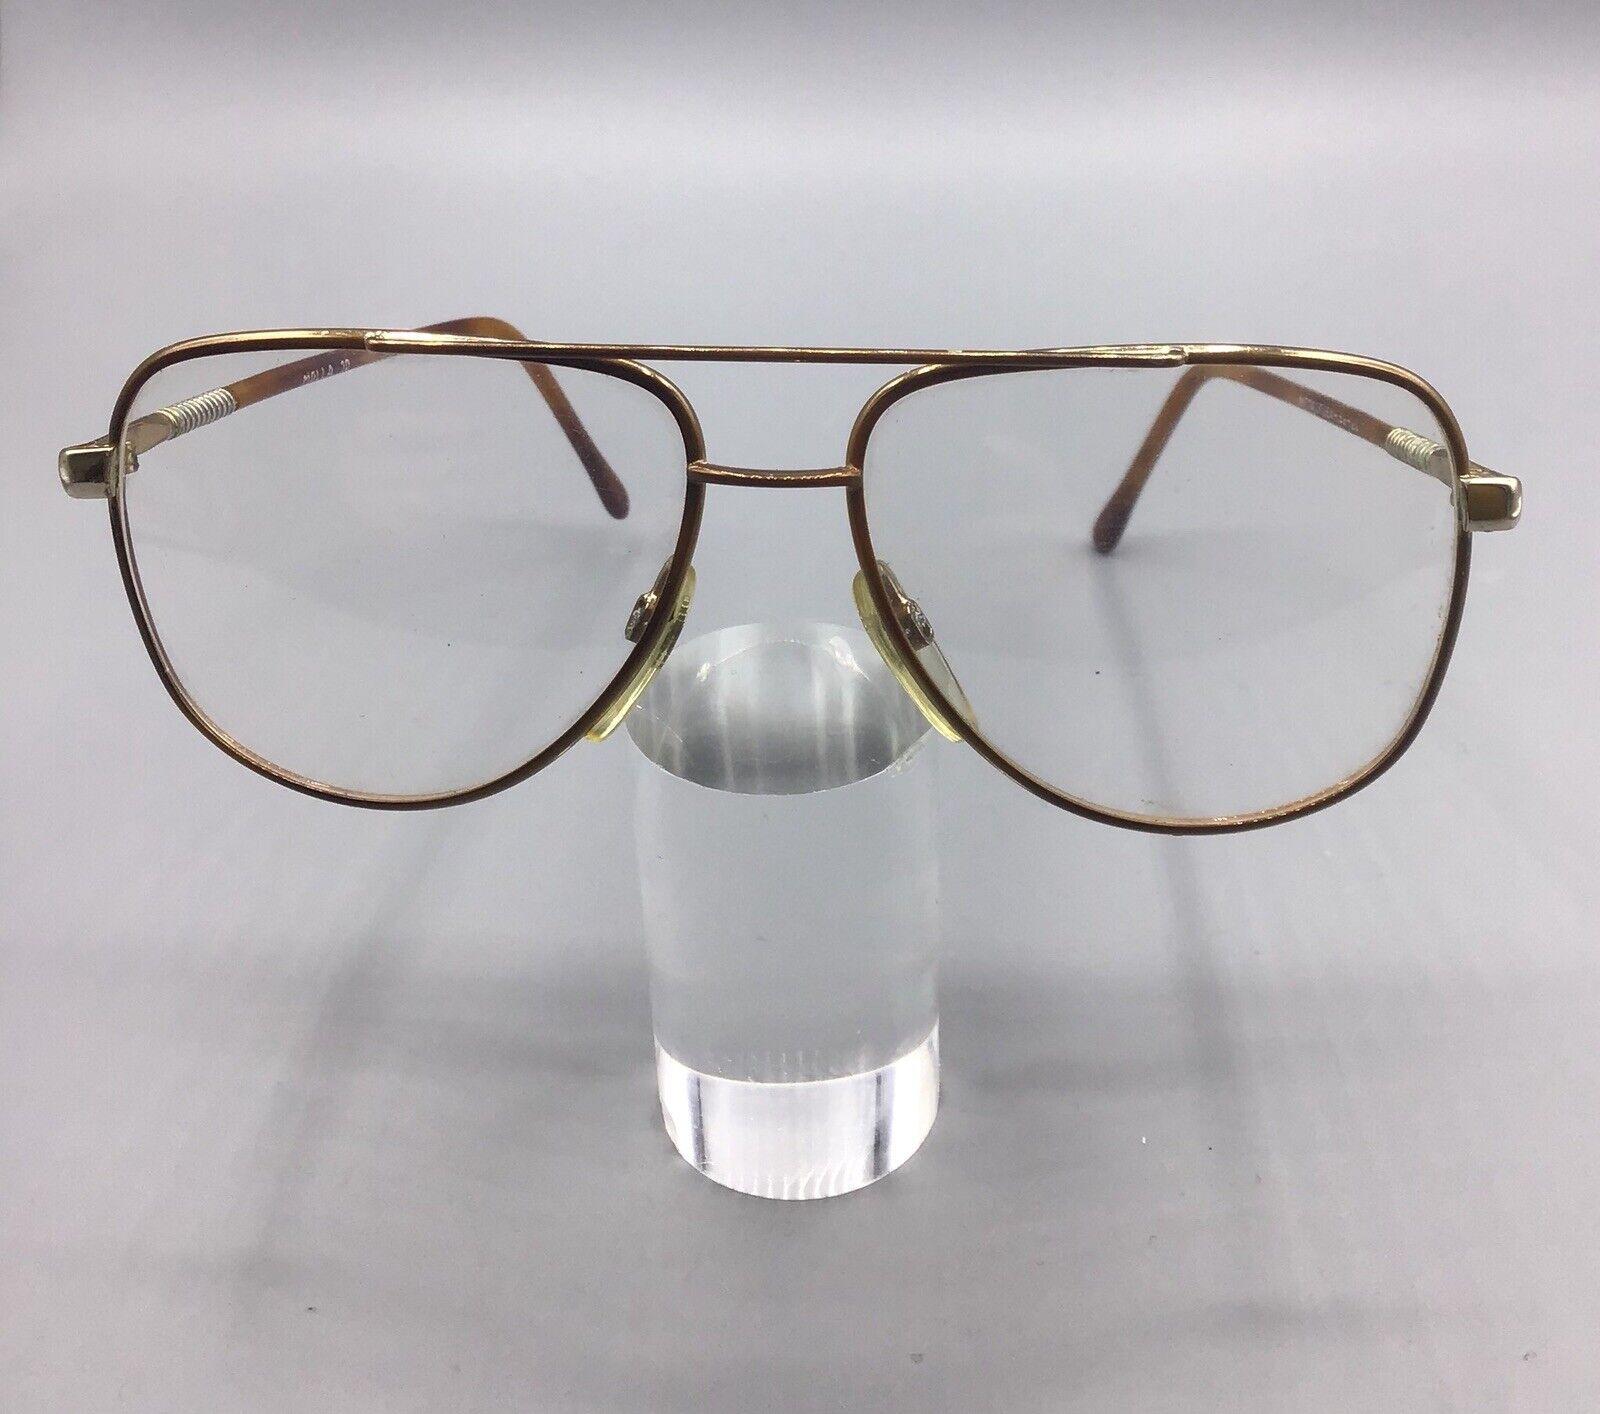 Metalflex molla 10 52-20 occhiale vintage eyewear frame brillen lunettes